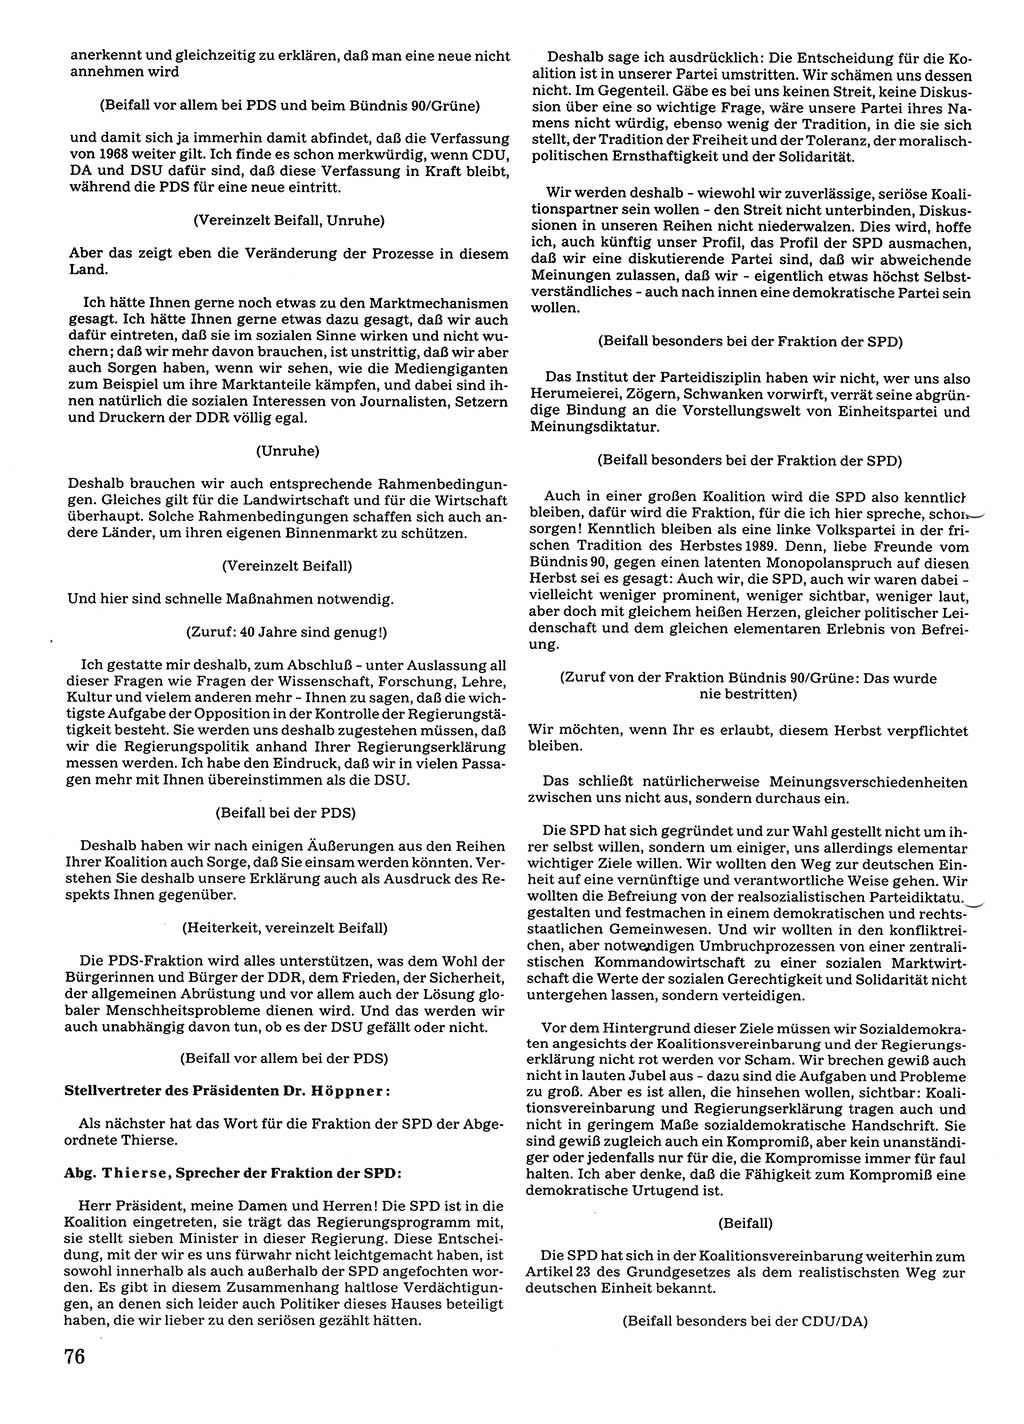 Tagungen der Volkskammer (VK) der Deutschen Demokratischen Republik (DDR), 10. Wahlperiode 1990, Seite 76 (VK. DDR 10. WP. 1990, Prot. Tg. 1-38, 5.4.-2.10.1990, S. 76)